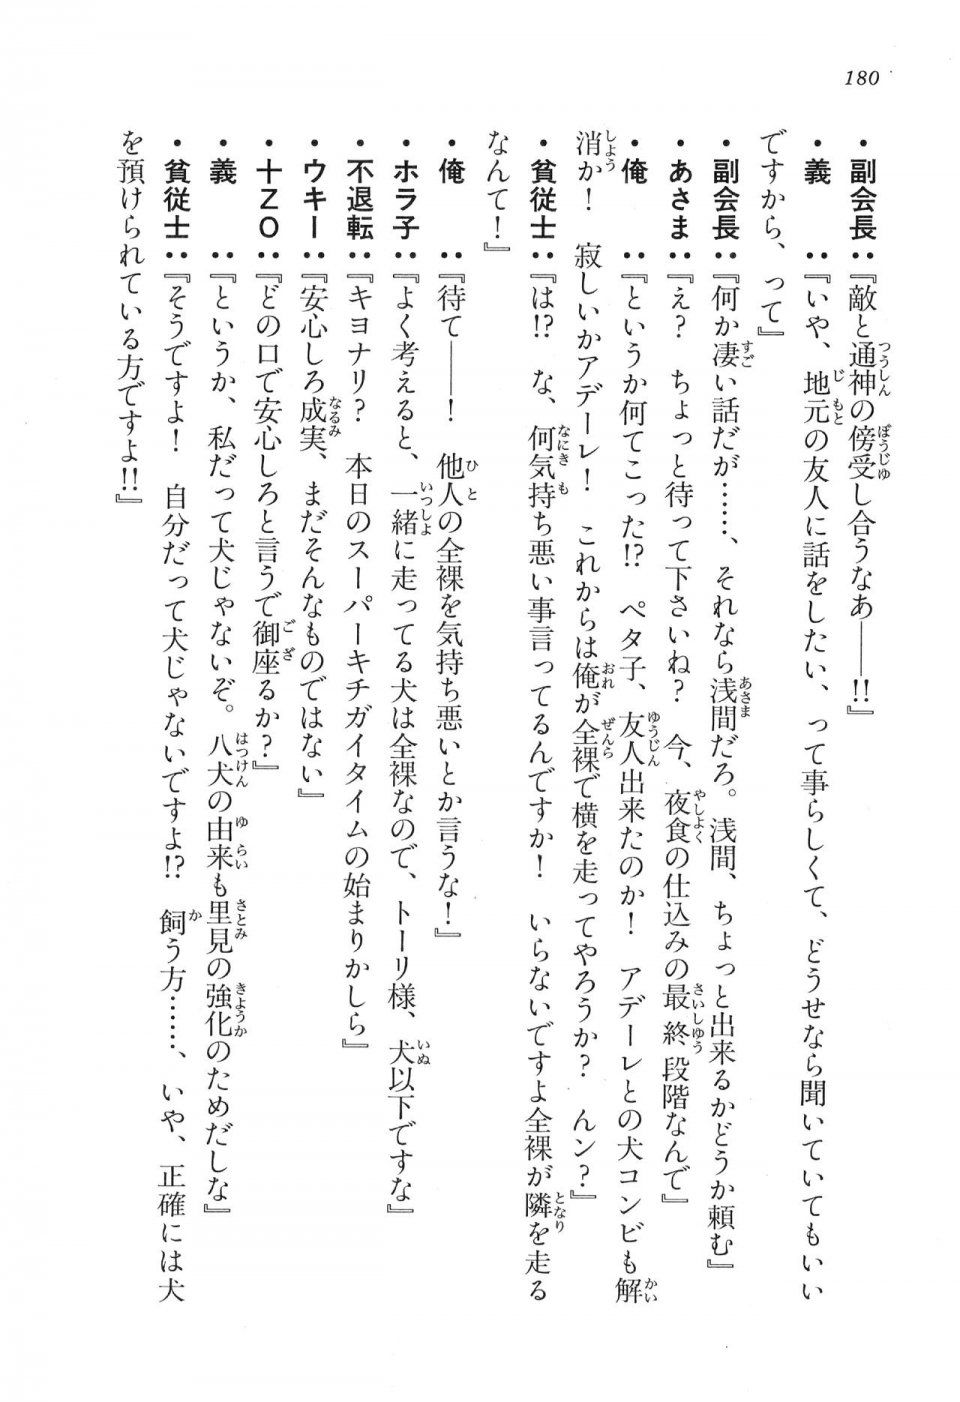 Kyoukai Senjou no Horizon LN Vol 16(7A) - Photo #180